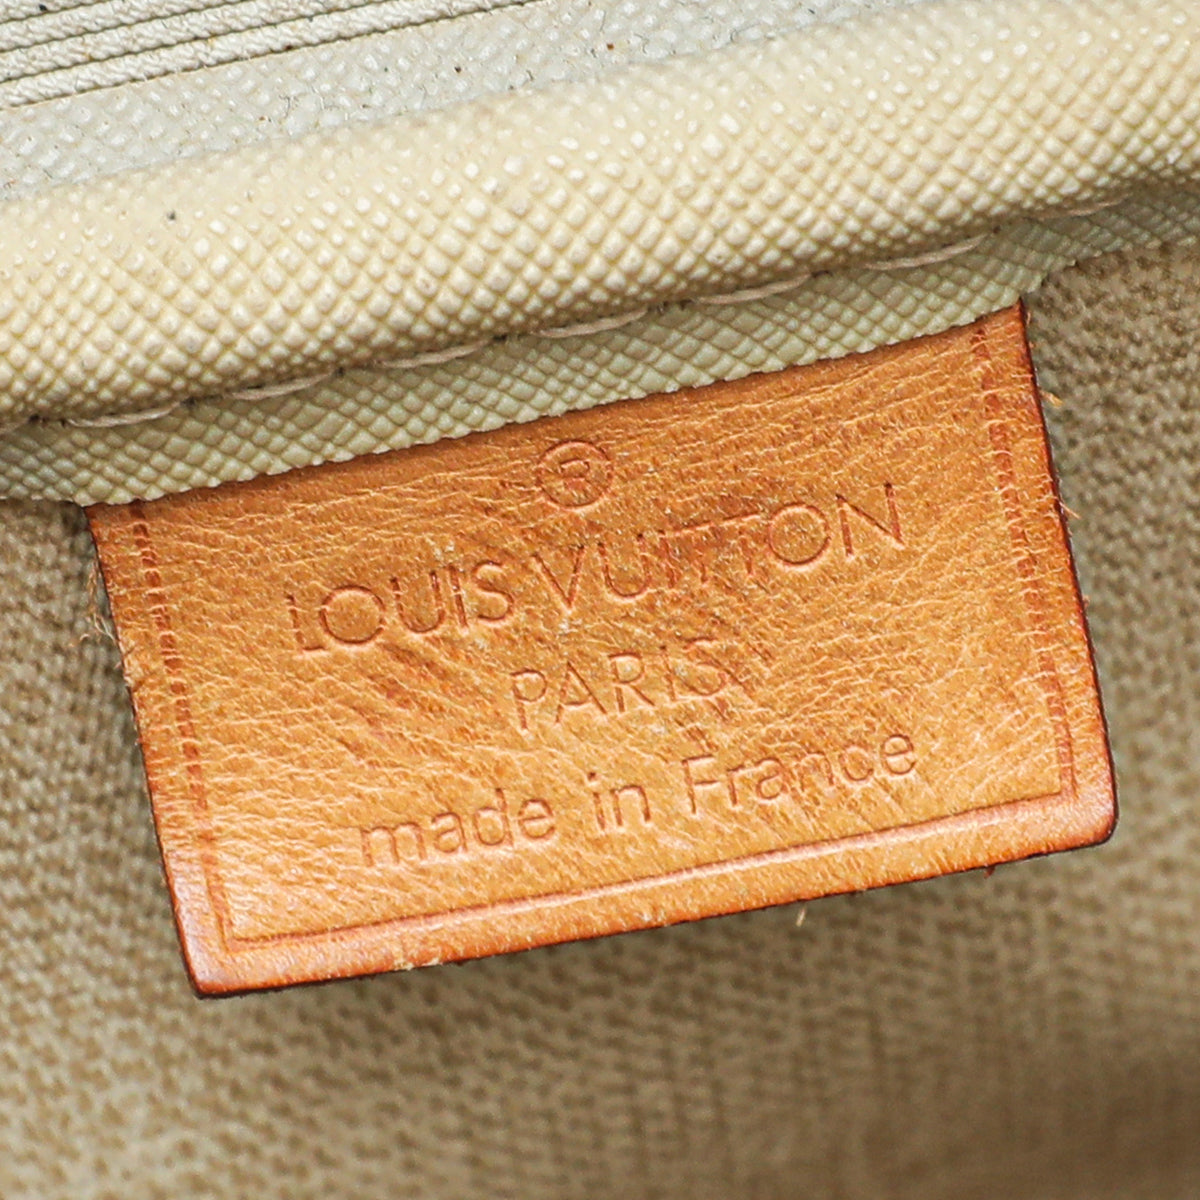 Louis Vuitton Monogram Deauville Bag